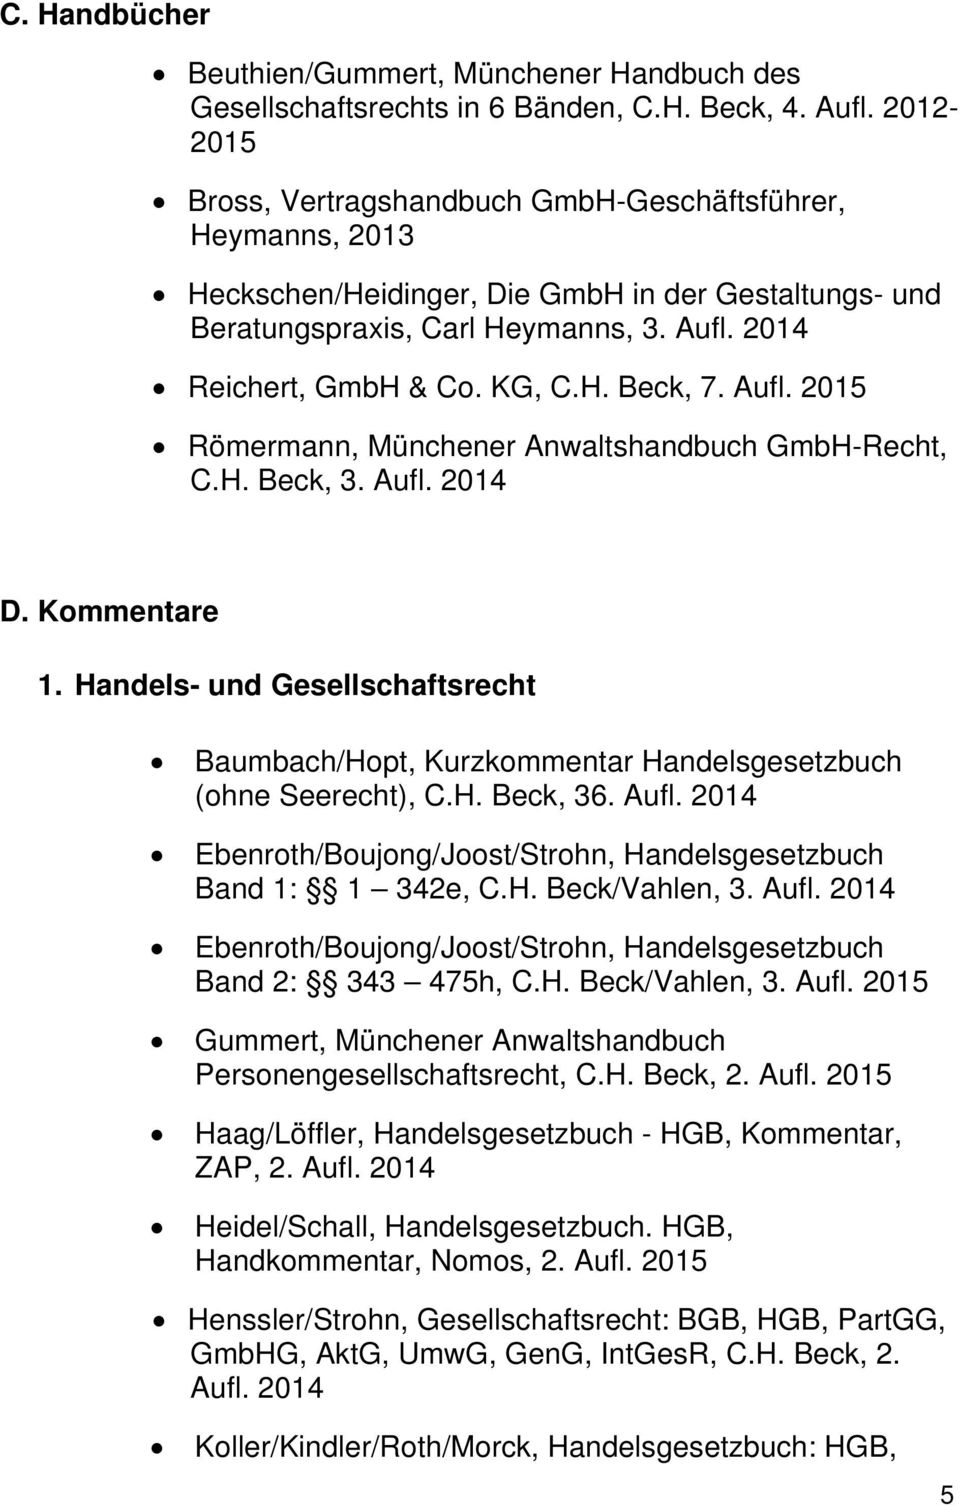 Aufl. Römermann, Münchener Anwaltshandbuch GmbH-Recht, C.H. Beck, 3. Aufl. D. Kommentare 1. Handels- und Gesellschaftsrecht Baumbach/Hopt, Kurzkommentar Handelsgesetzbuch (ohne Seerecht), C.H. Beck, 36.